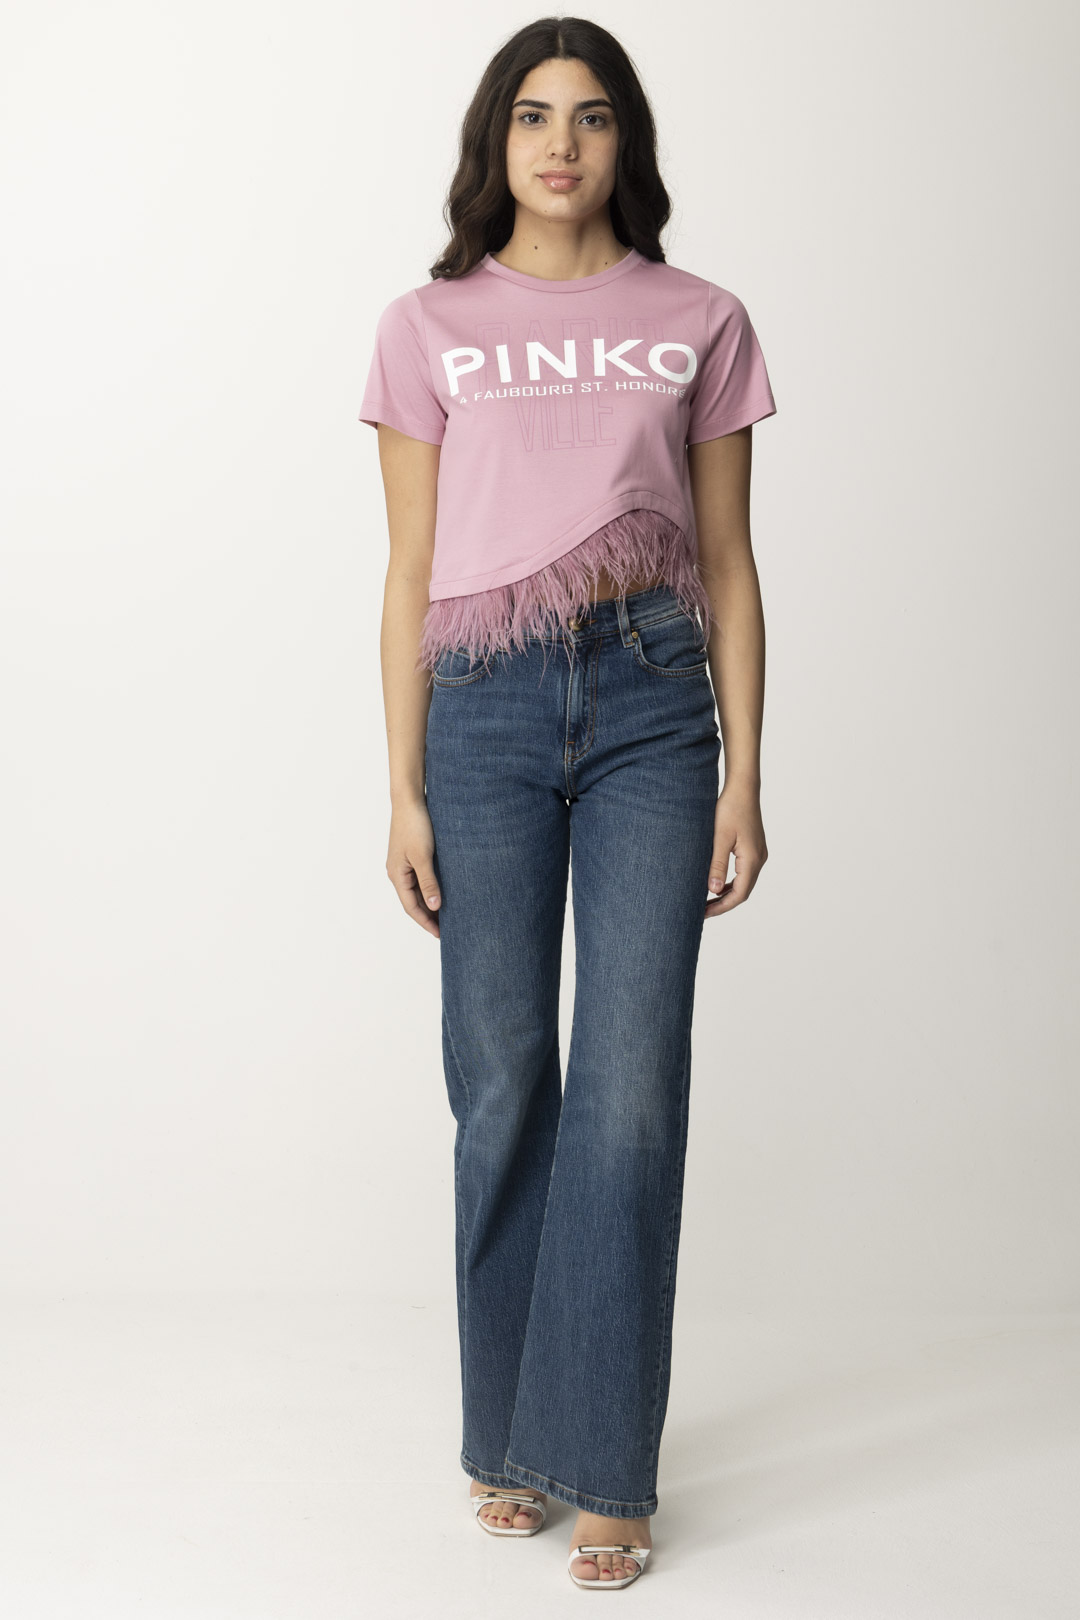 Preview: Pinko Wanda Jeans LAVAGGIO MEDIO CHIARO